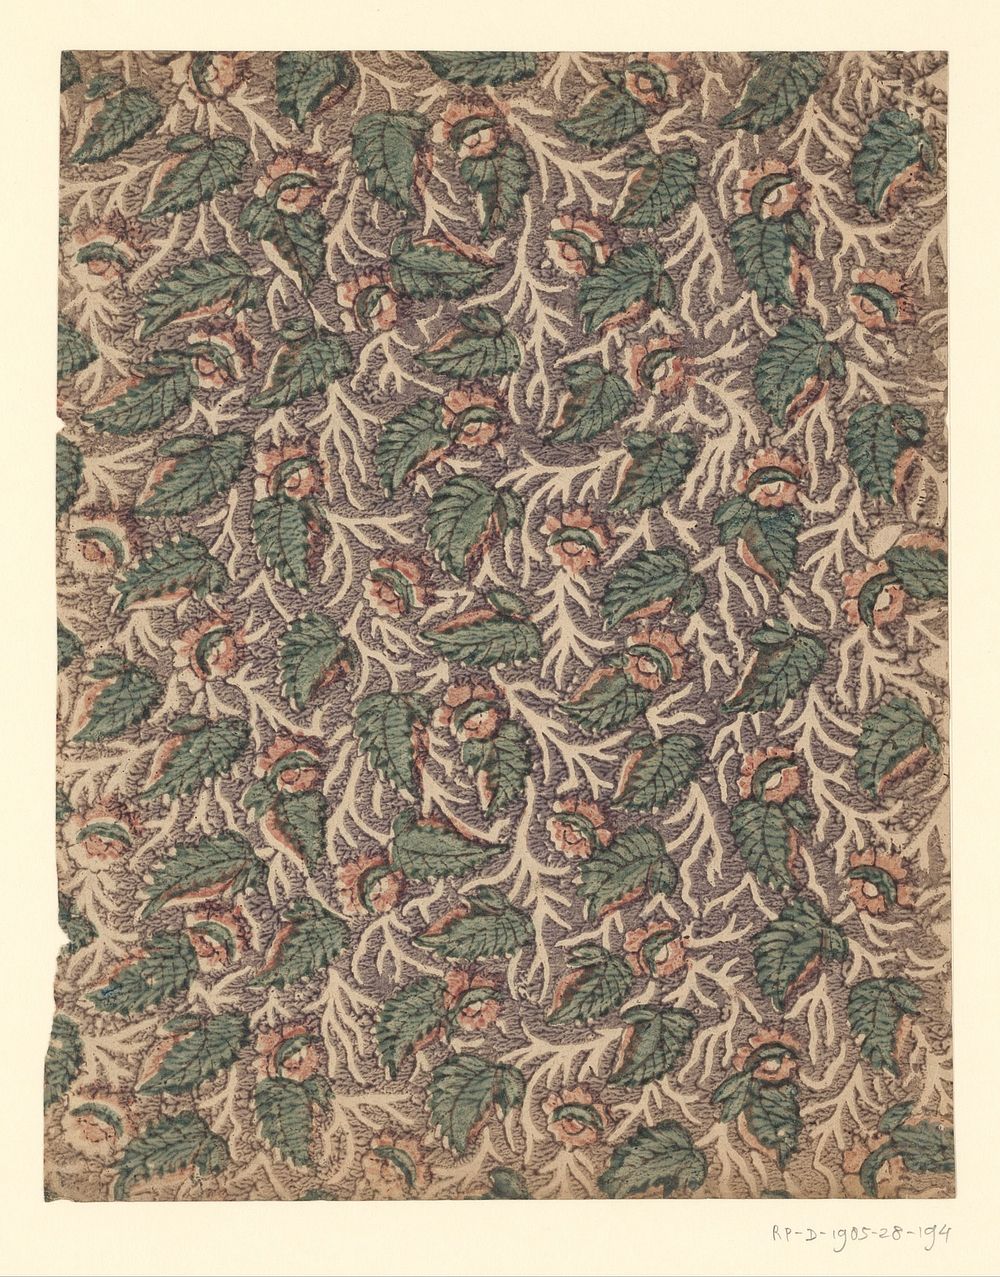 Blad met strooipatroon van bloem met blad tussen uitgespaarde takken (1750 - 1900) by anonymous